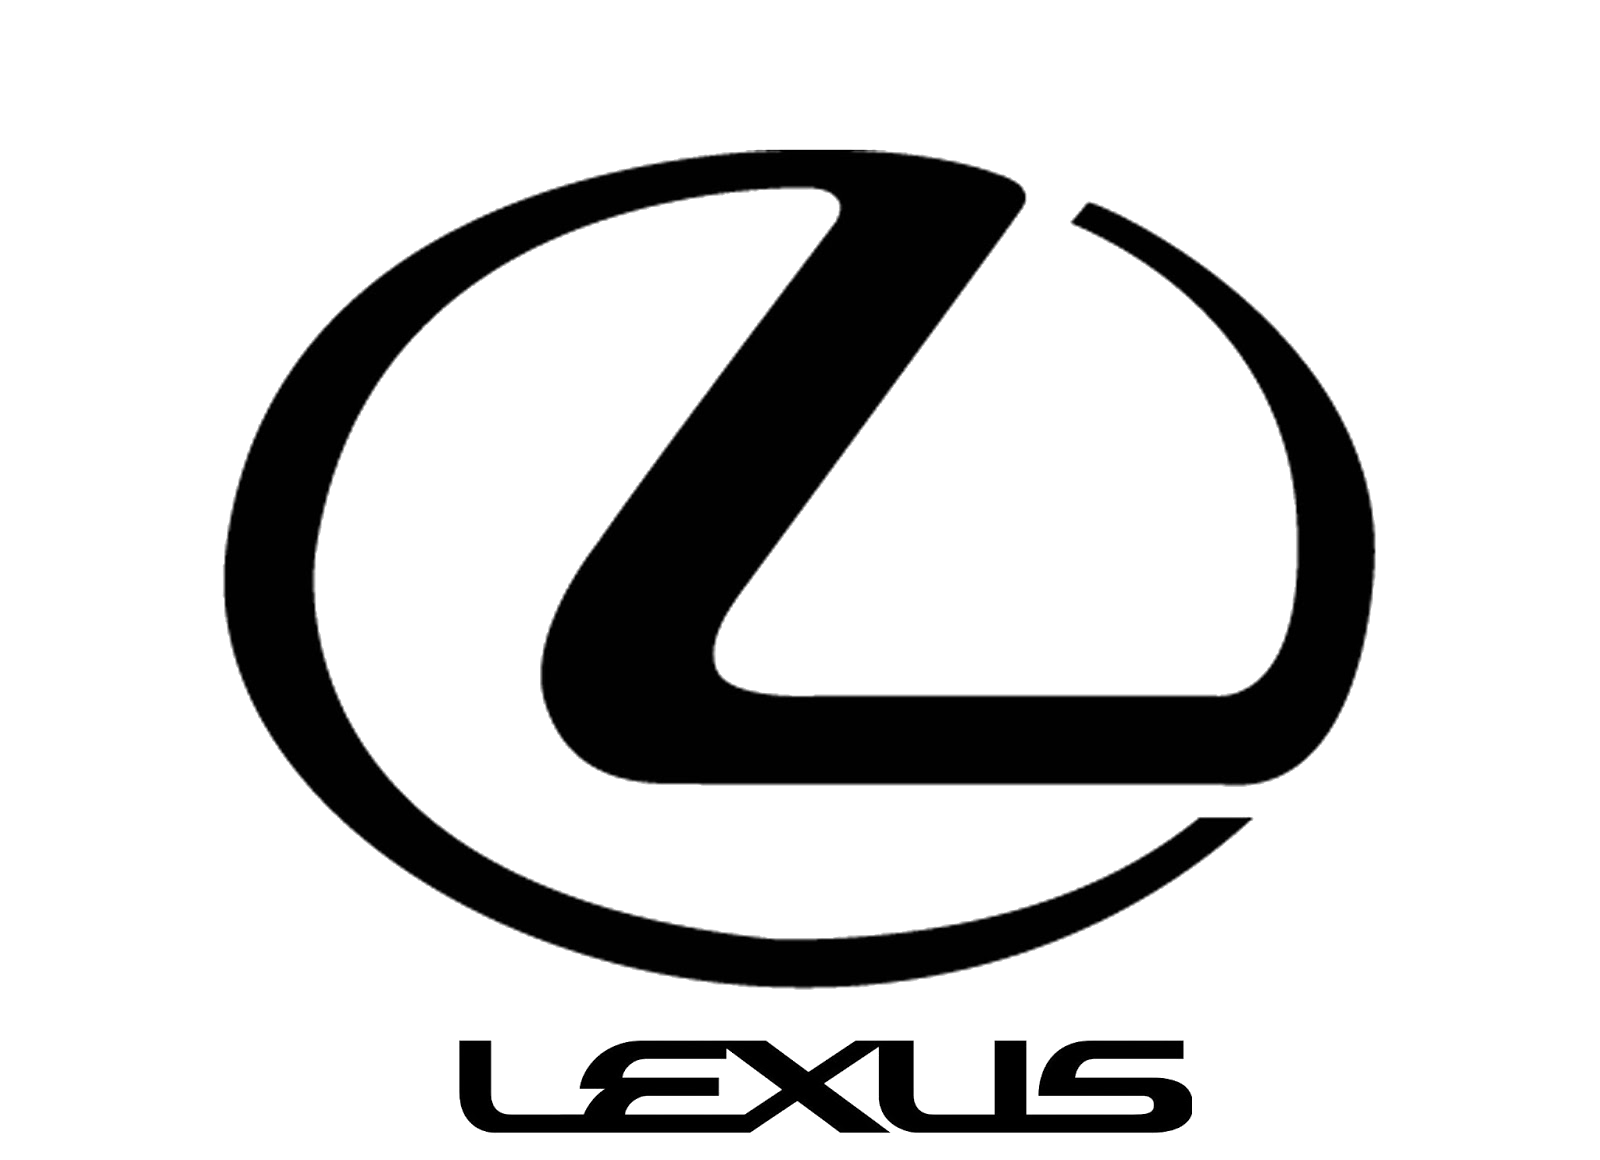 Lexus Car Logo - Lexus Auto Vector, Transparent background PNG HD thumbnail